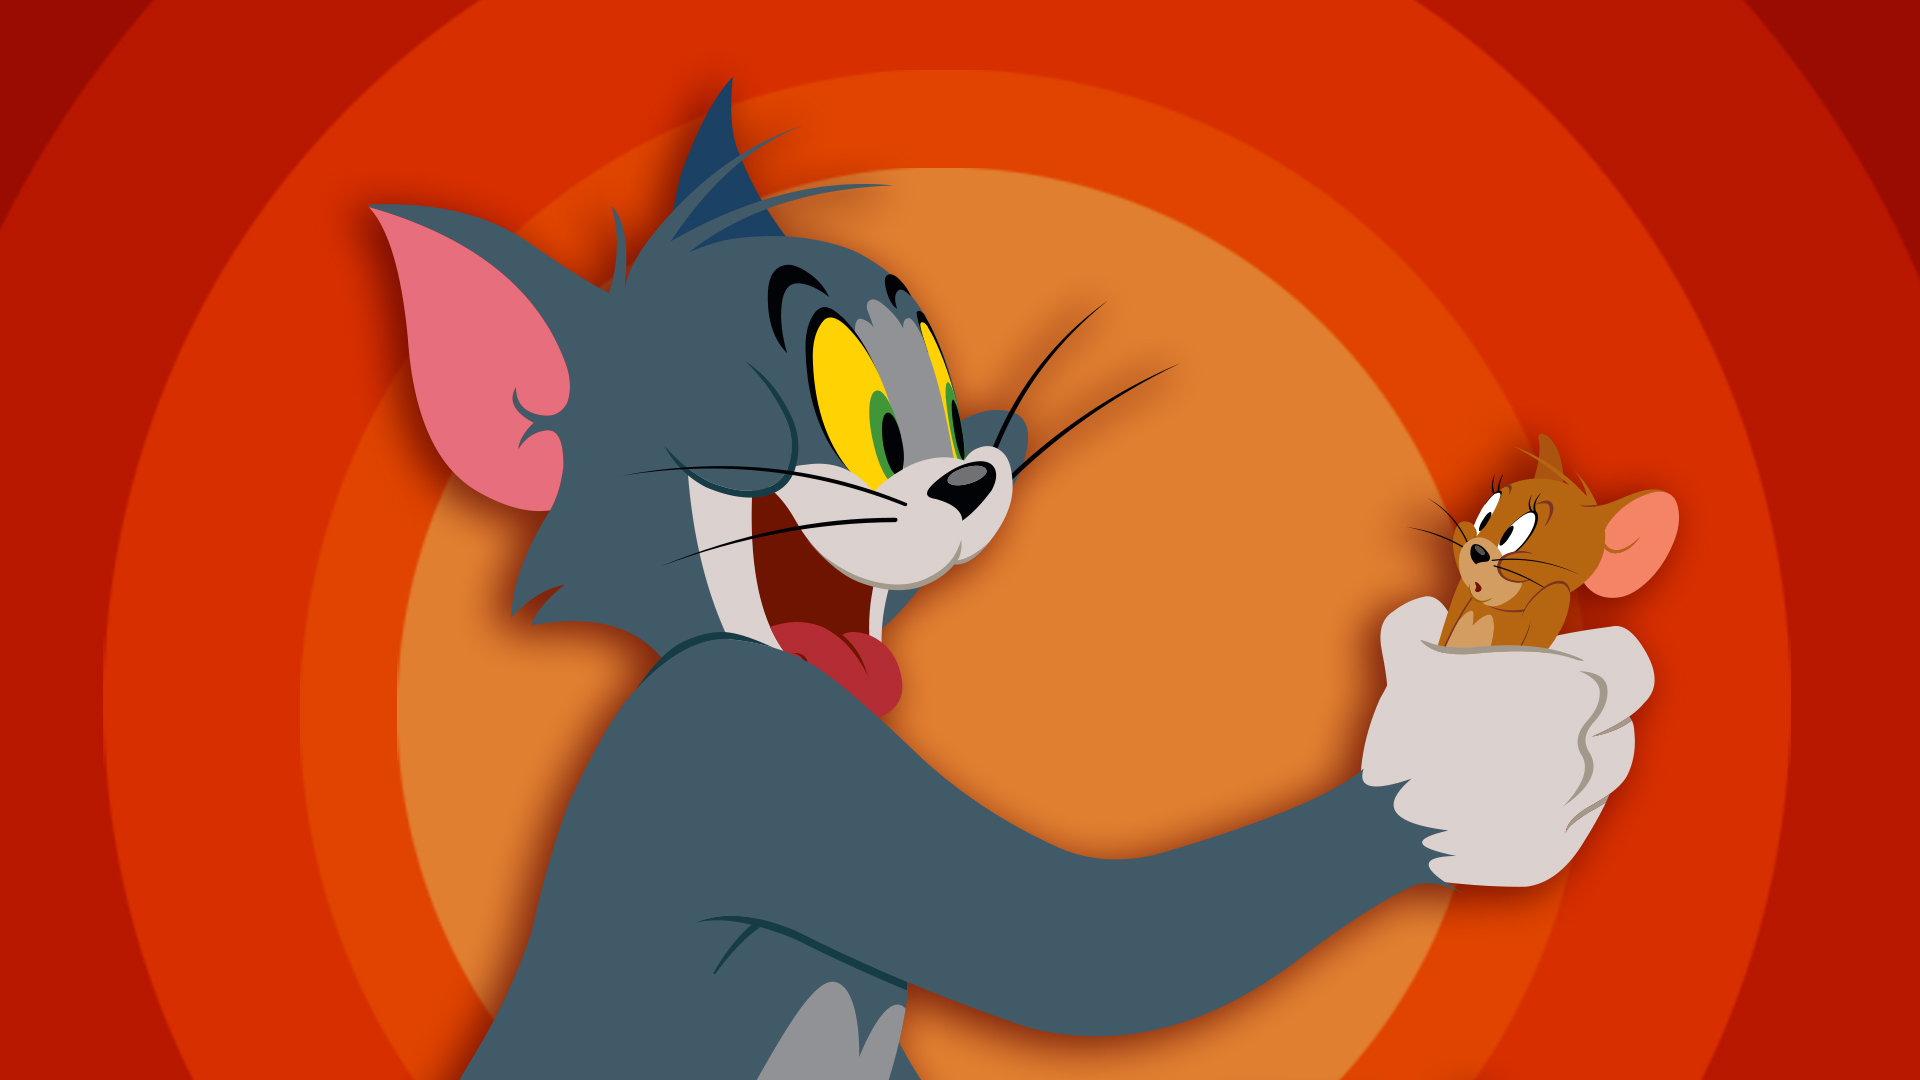 Bộ đôi Tom và Jerry là một trong những cặp đôi nổi tiếng nhất trong thế giới hoạt hình. Họ luôn tạo ra những khoảnh khắc hài hước và đáng yêu, và điều đó được thể hiện rõ ràng trong những bức ảnh của họ. Hãy đến và xem những bức ảnh này để tận hưởng những giây phút thư giãn và vui vẻ.